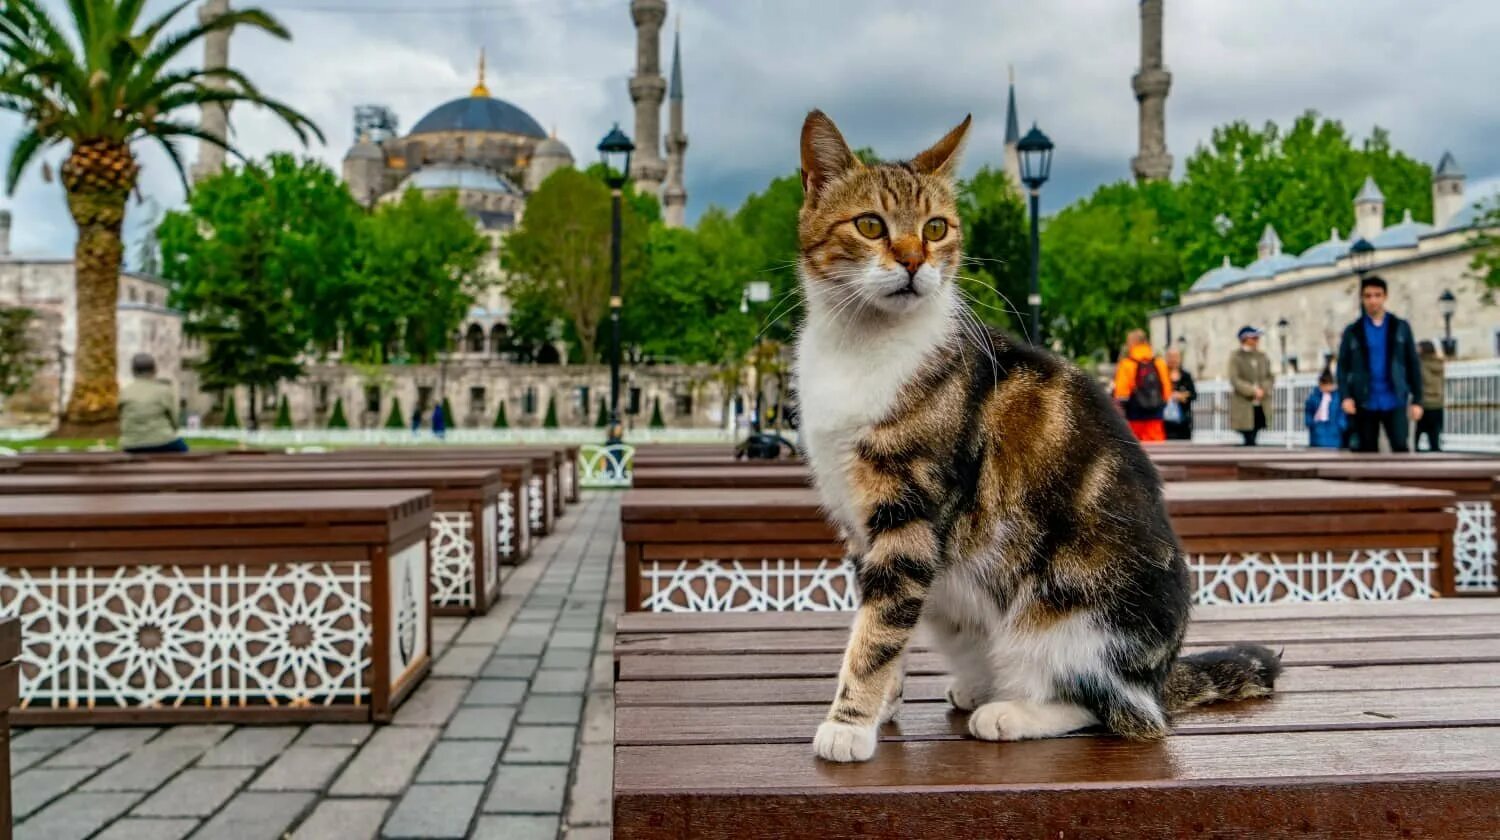 Turkey cats. Стамбул Кошкин дом. Коты в Стамбуле. Уличная кошка. Стамбул город кошек.